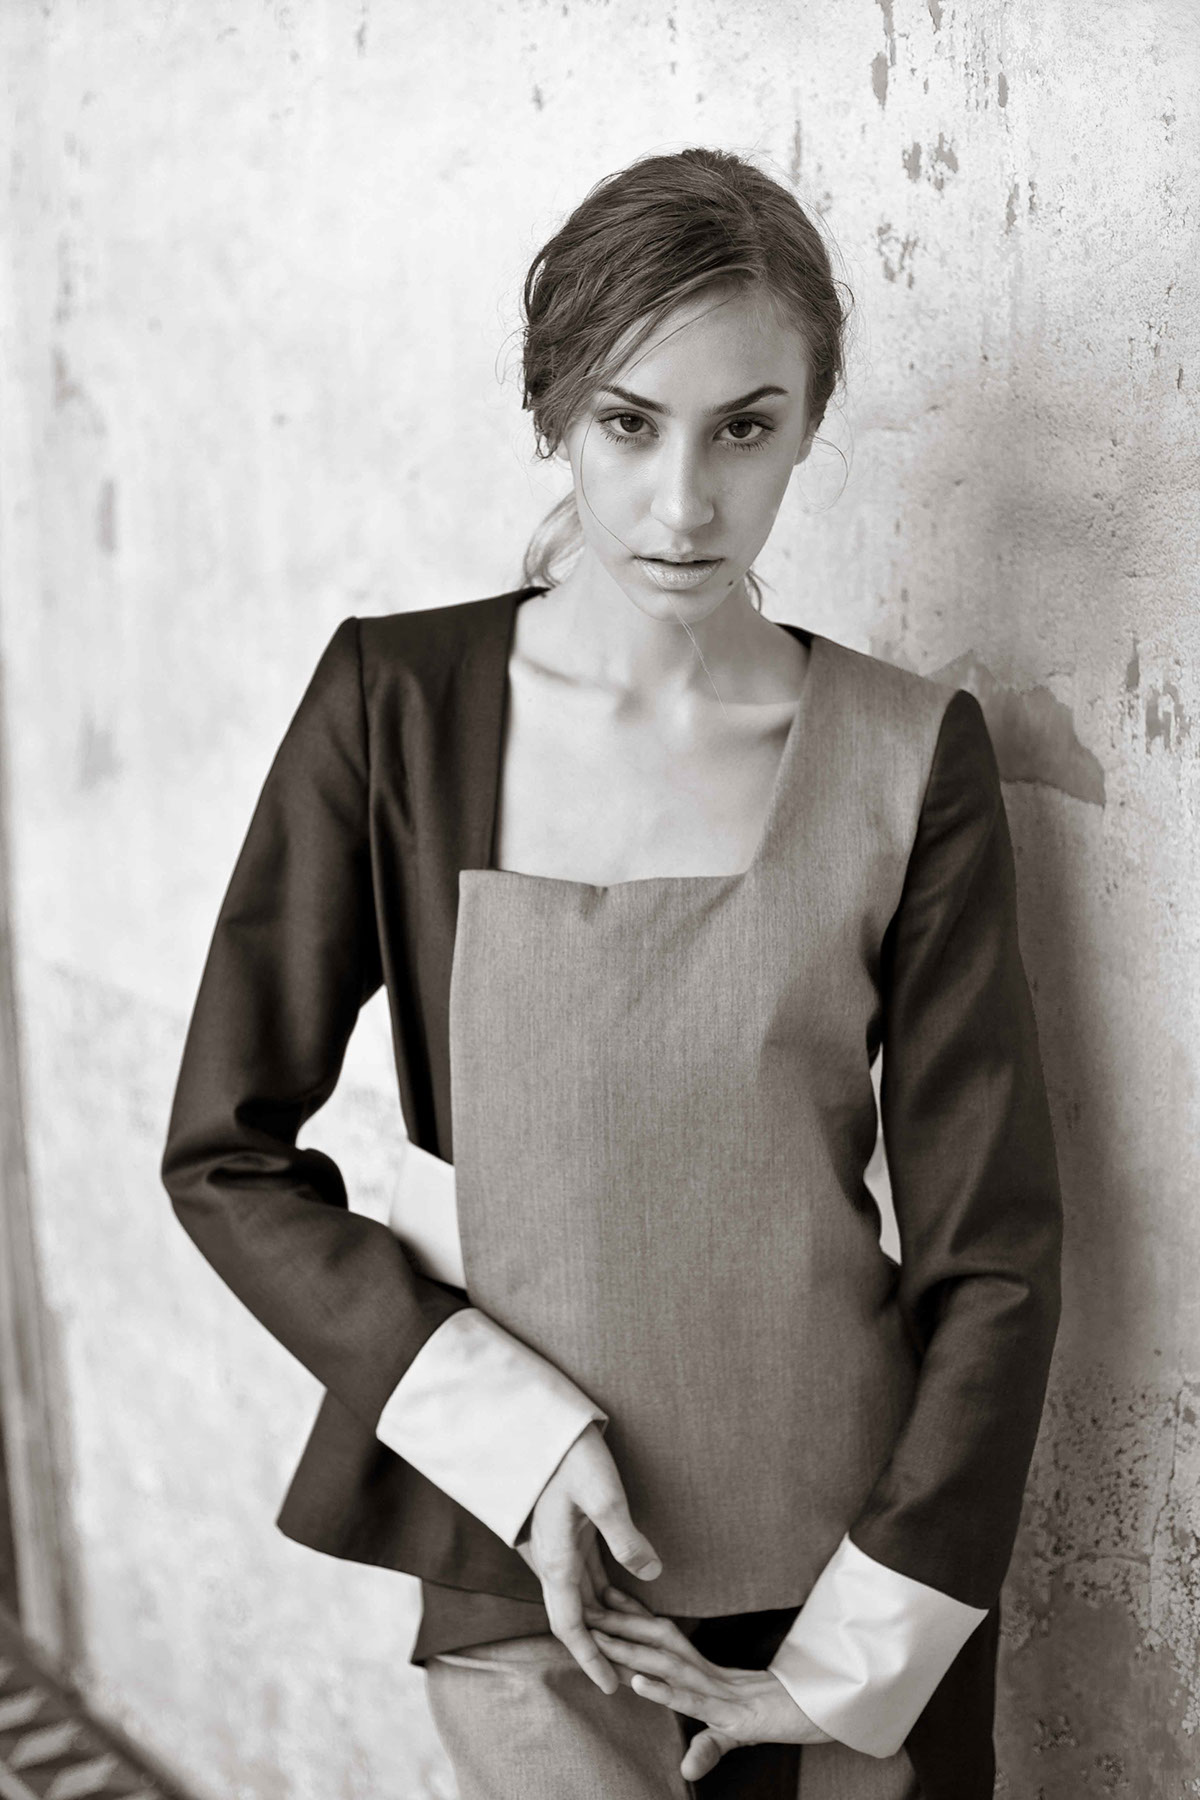 fotografia de moda brazilian fashion young designer woman black and white portrait